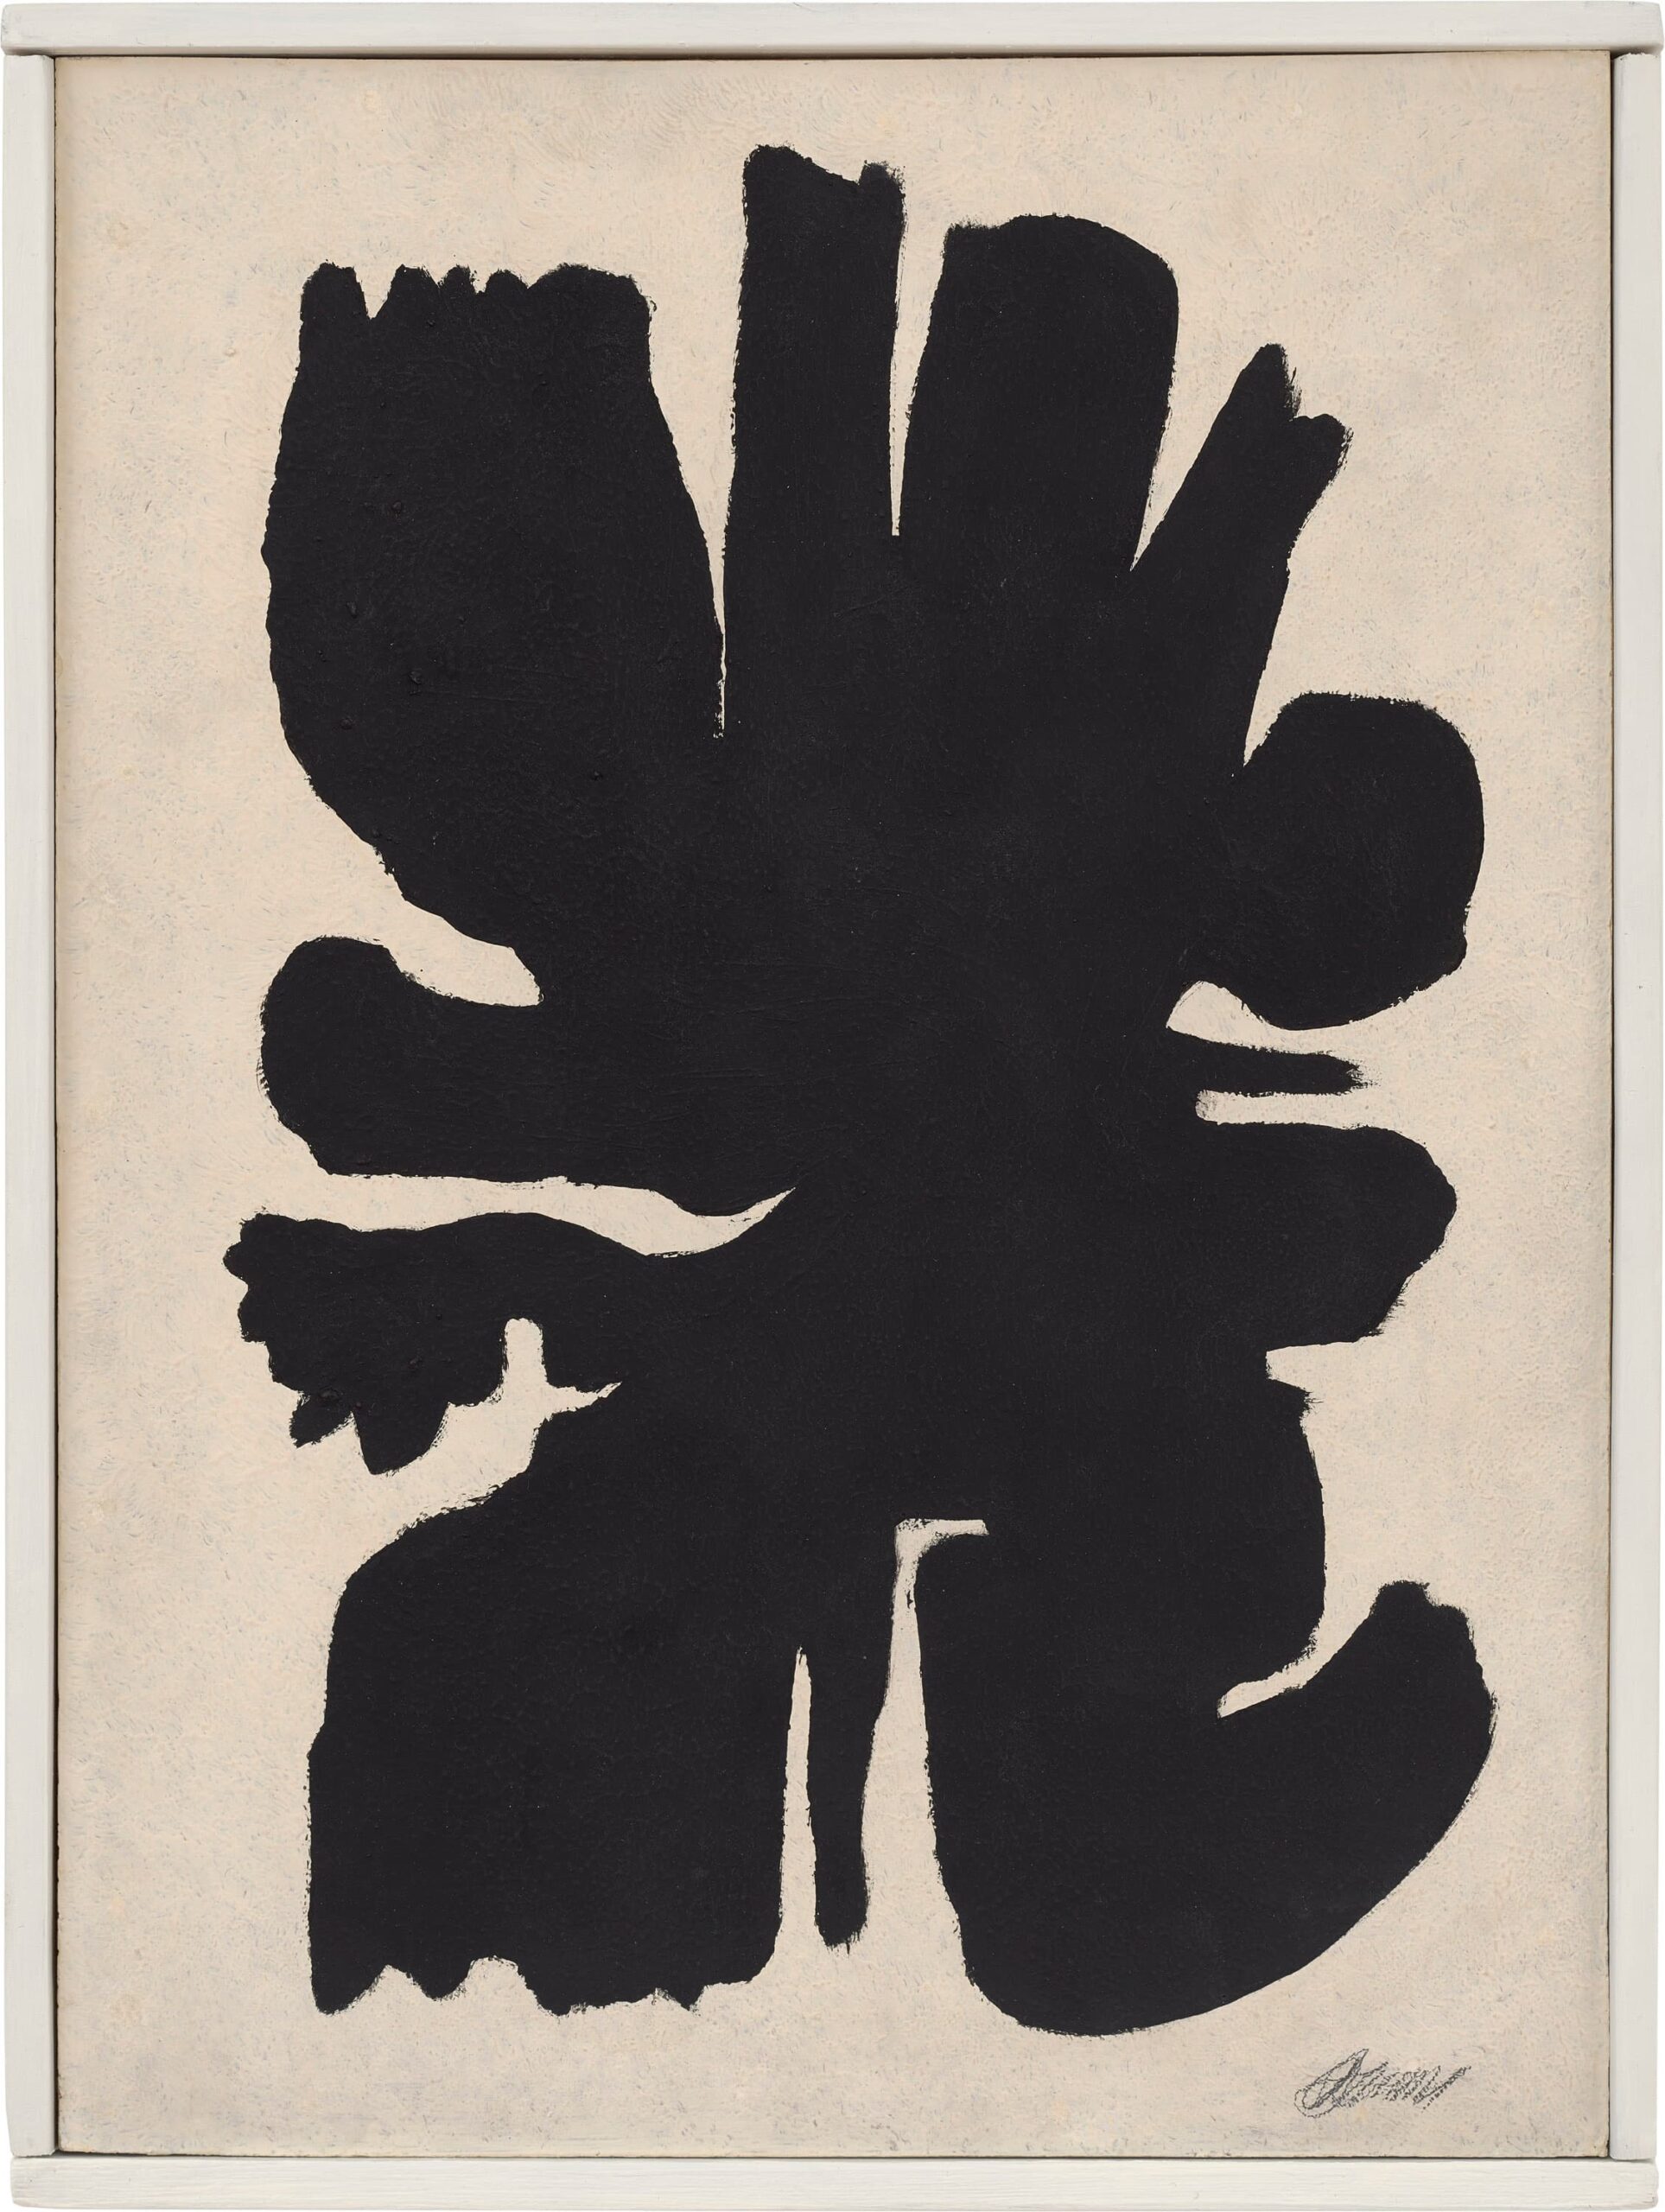 Willi Baumeister, ARU 13, 1955, Öl mit Kunstharz auf Hartfaserplatte, 36,5 x 27 cm, Courtesy & Copyright: Galerie Friese, Foto: Eric Tschernow, Berlin